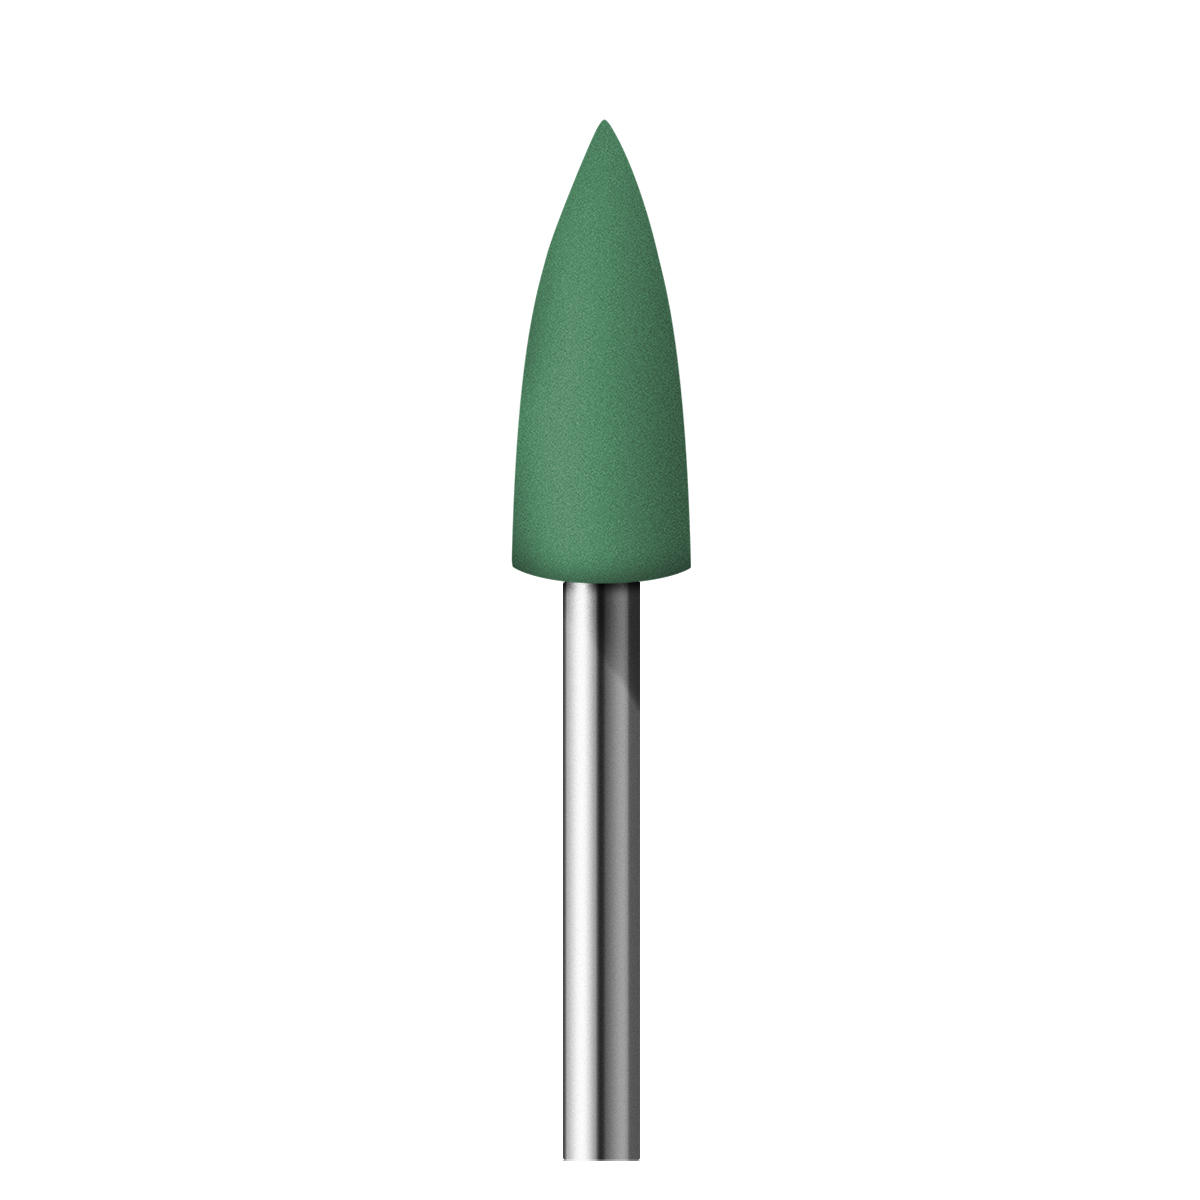 12 Polijster Alphaflex, groen, punt, Ø 5,5 x 15,5 mm, korrel fijn, HP-schacht